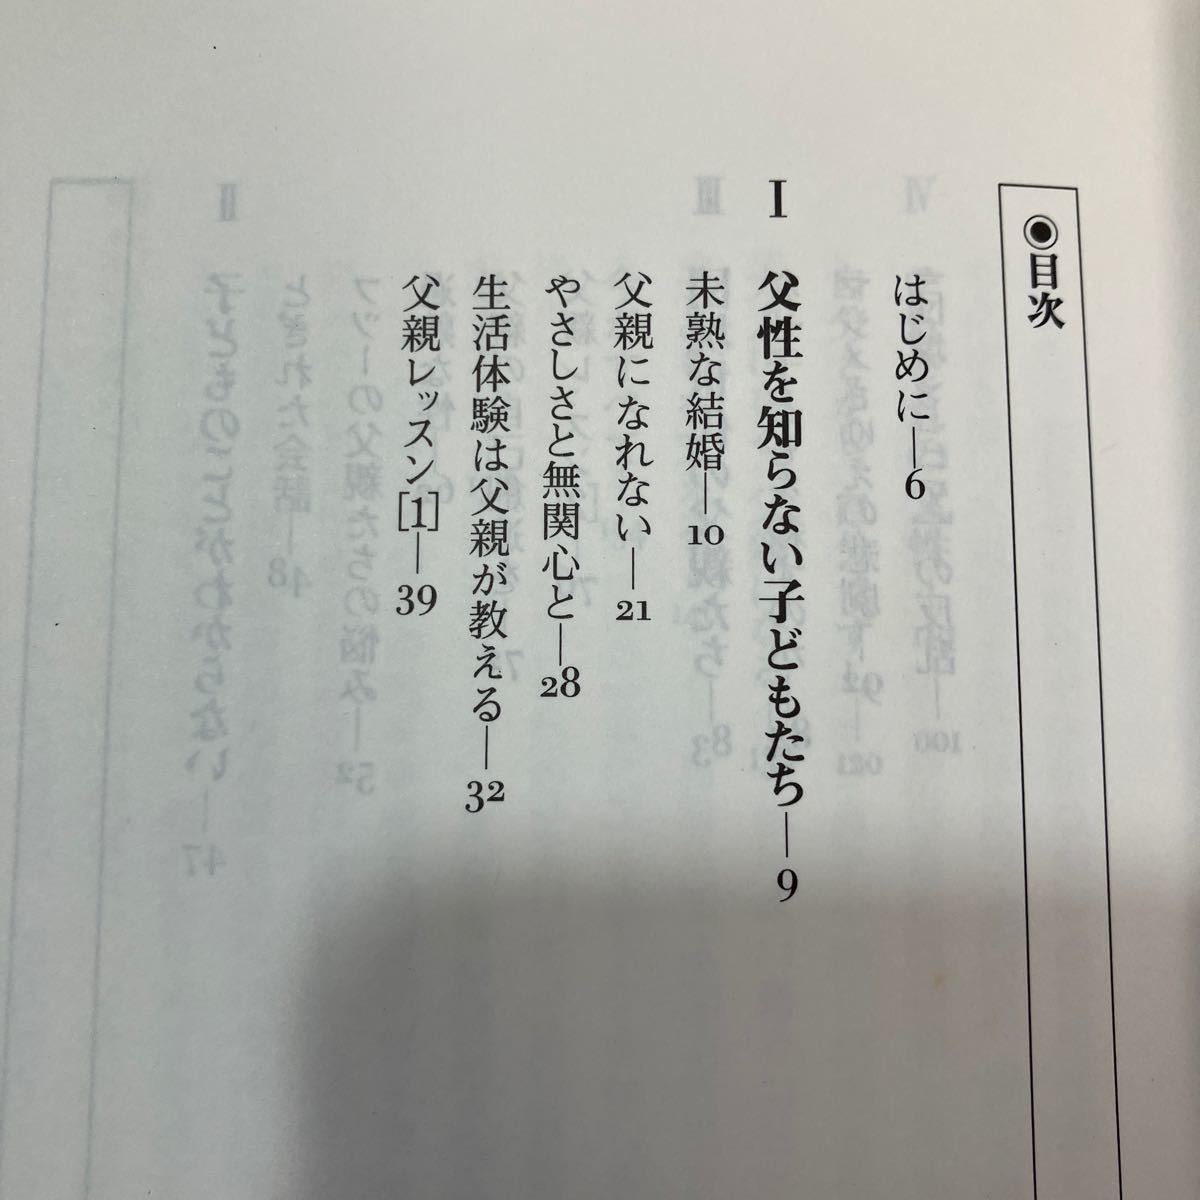 zaa553♪父親になるということ 単行本 辻井 正 (著) 角川書店 (同朋舎) (1998/1/1)